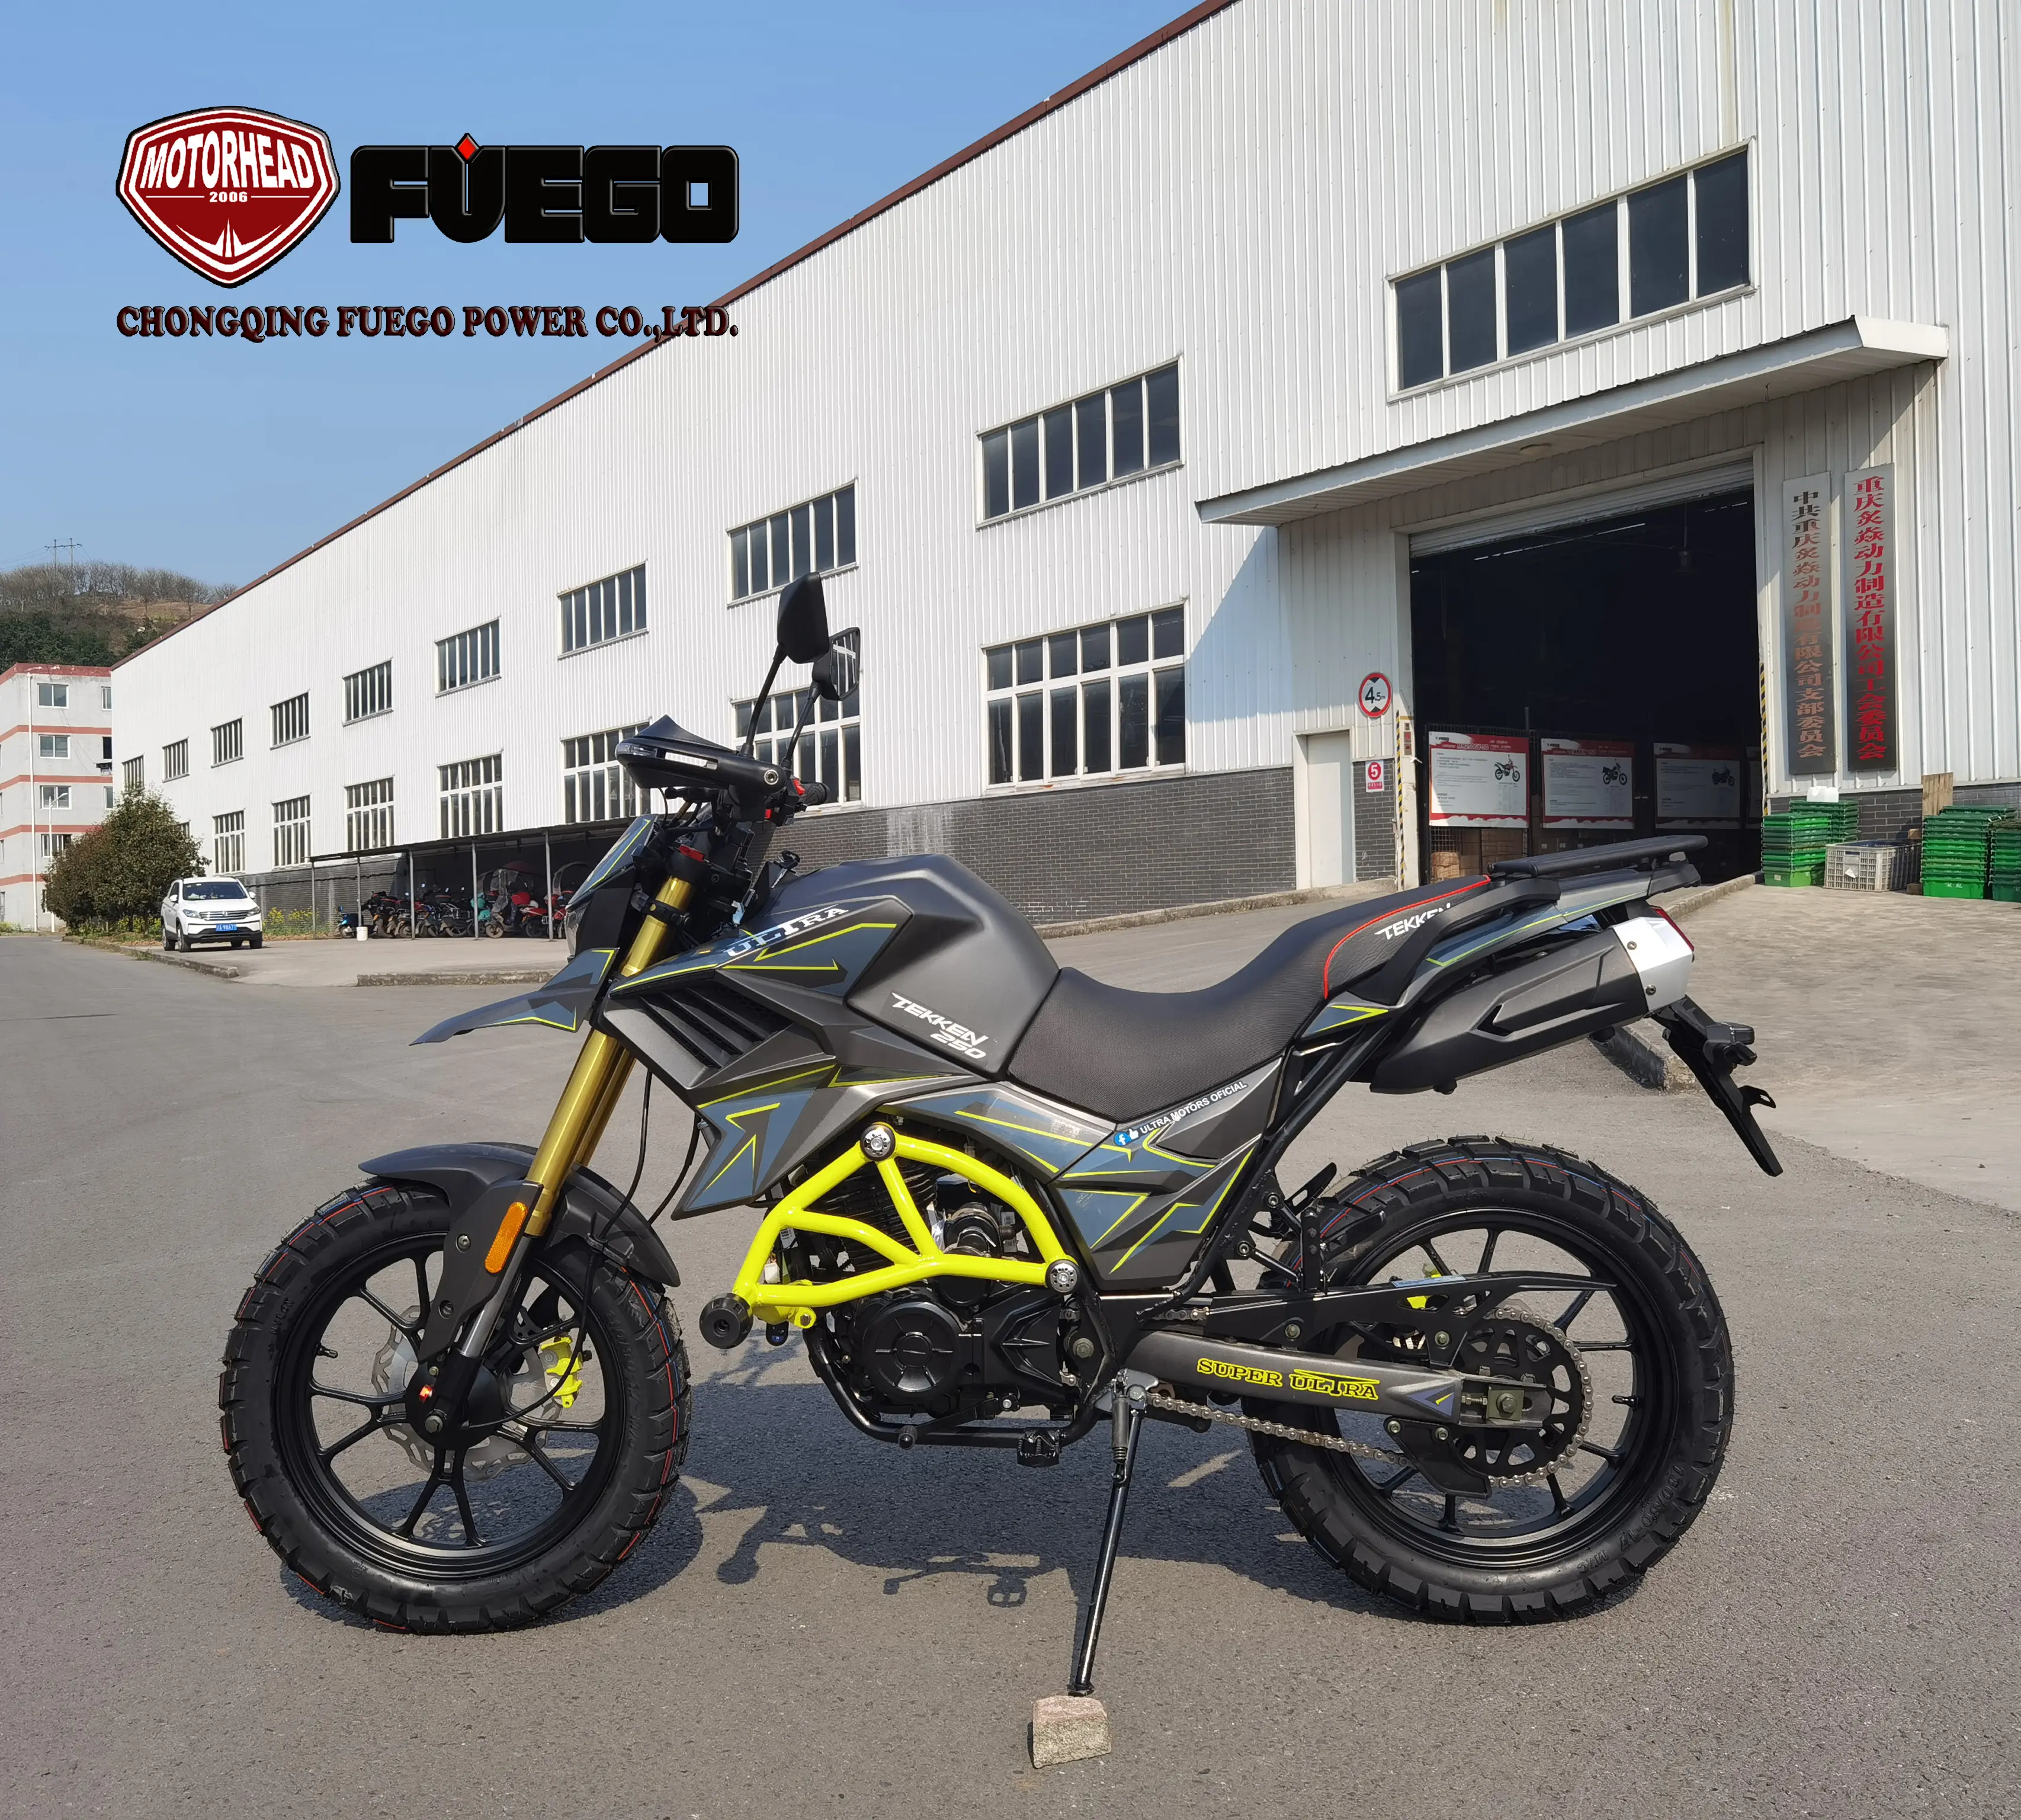 عمود الموازنة 250cc 300cc النينجا الرياضة مغامرة دراجة نارية درب Motos فويغو الطاقة تيكين دراجة نارية